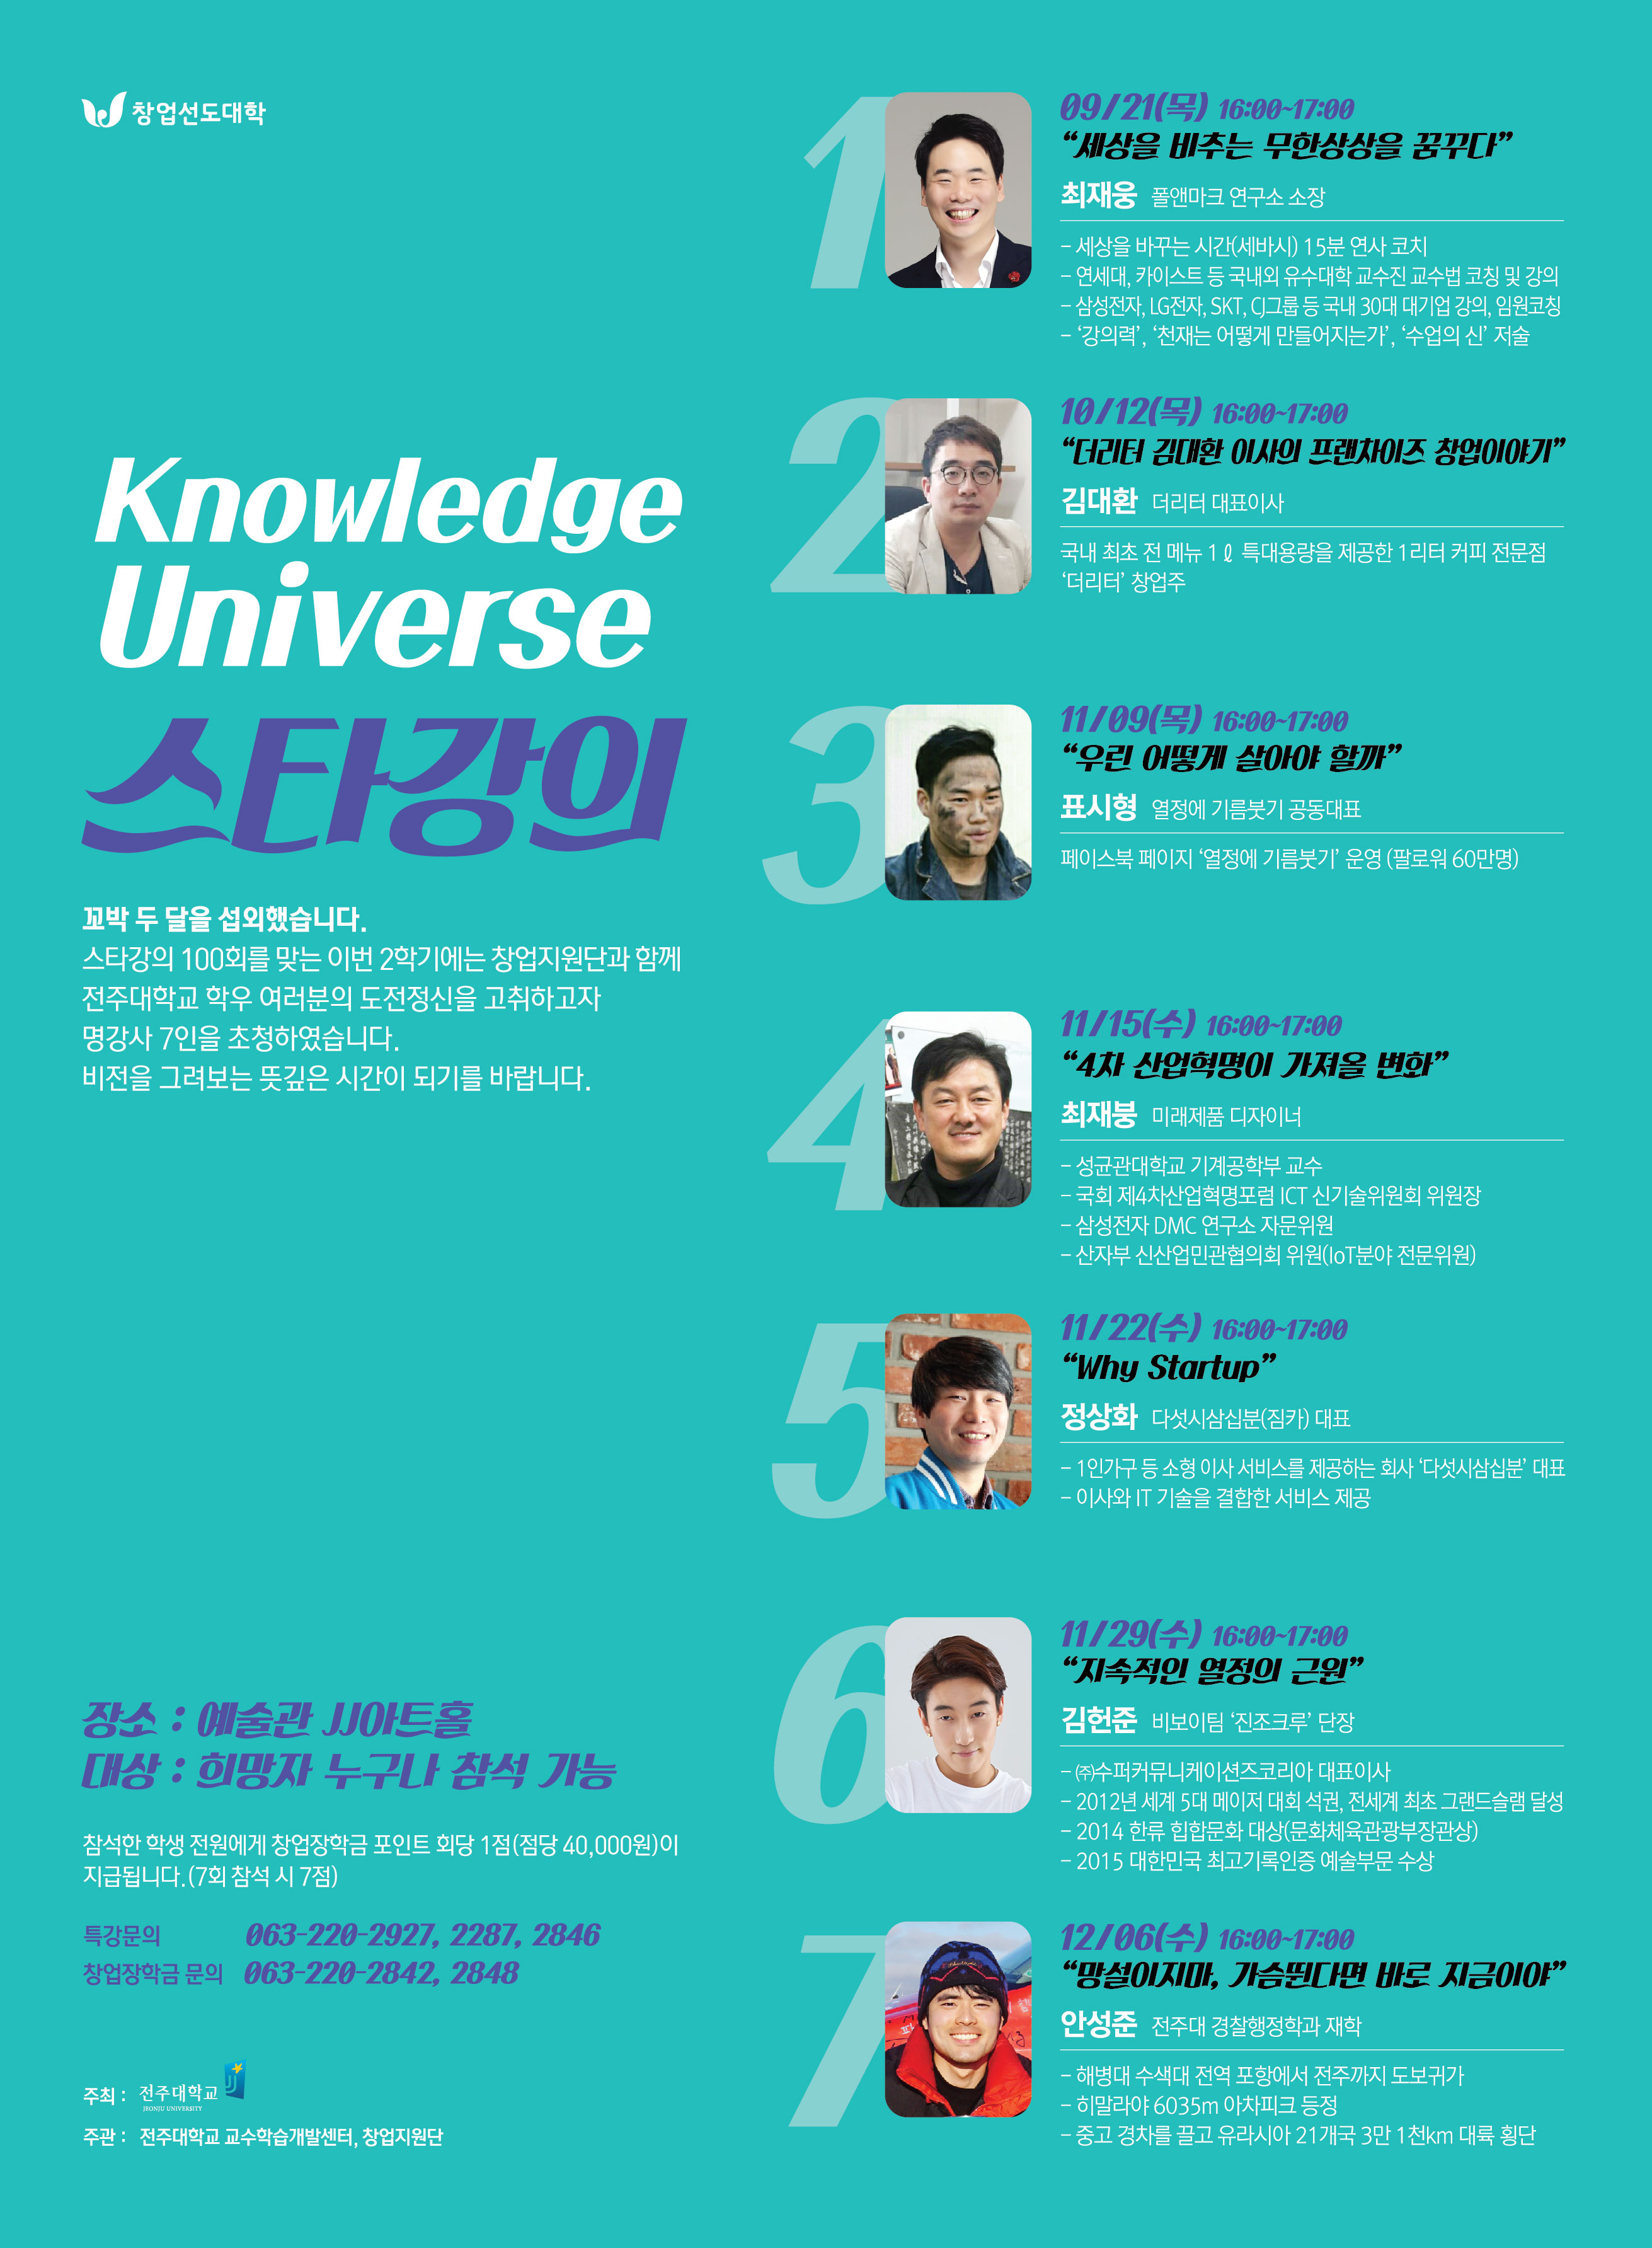  Knowledge Universe 스타강의 (1).jpg